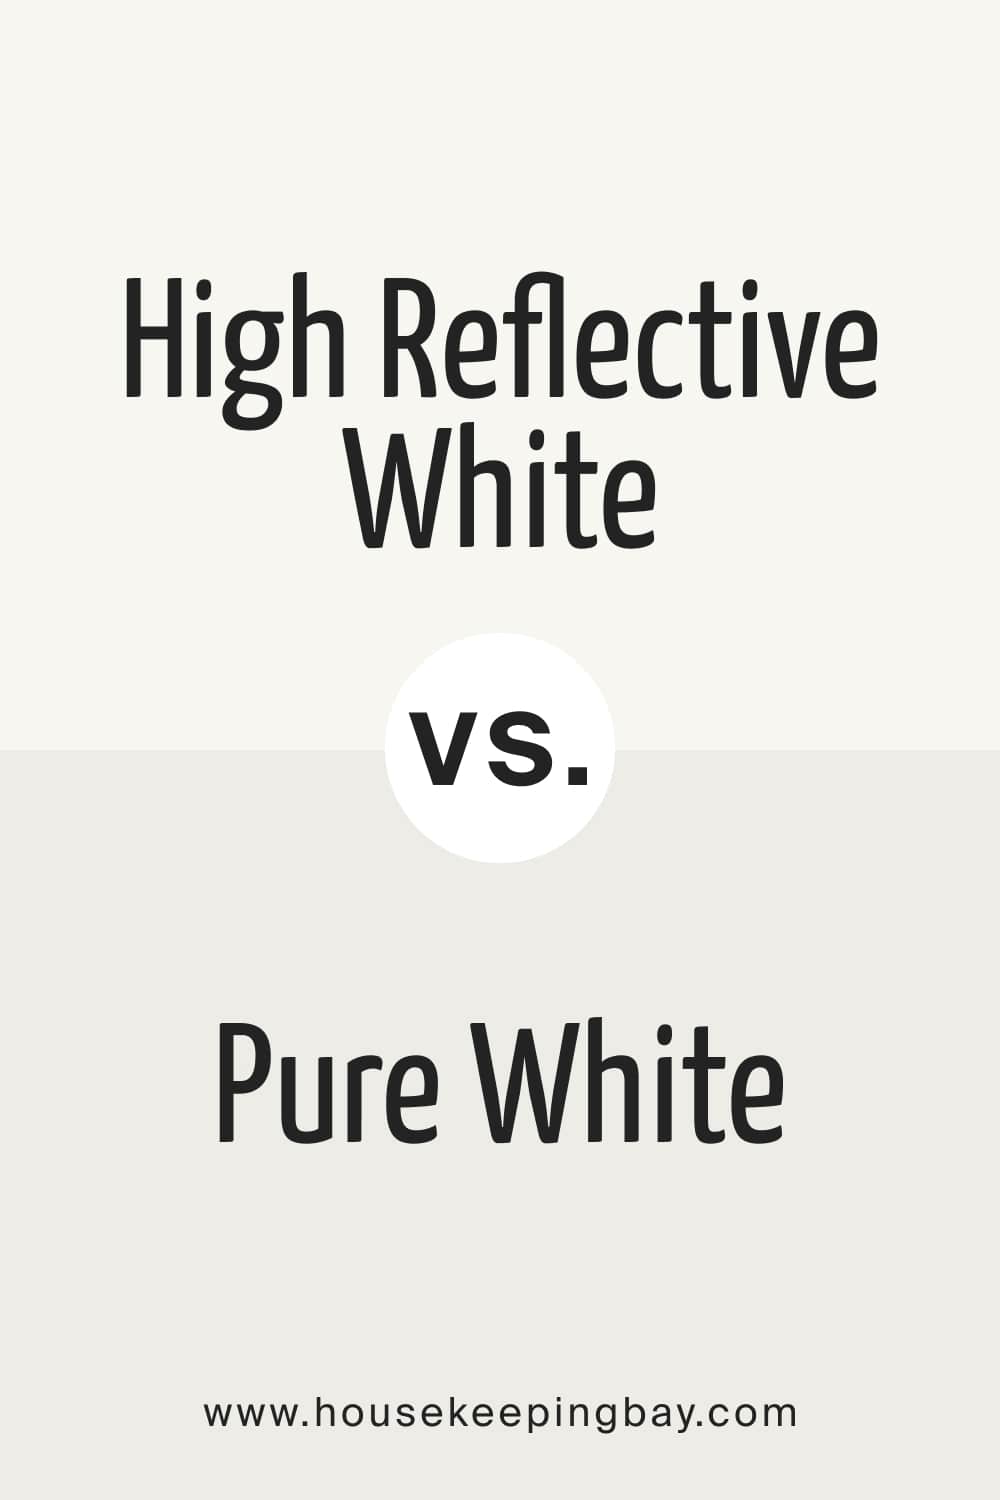 High Reflective White vs. Pure White